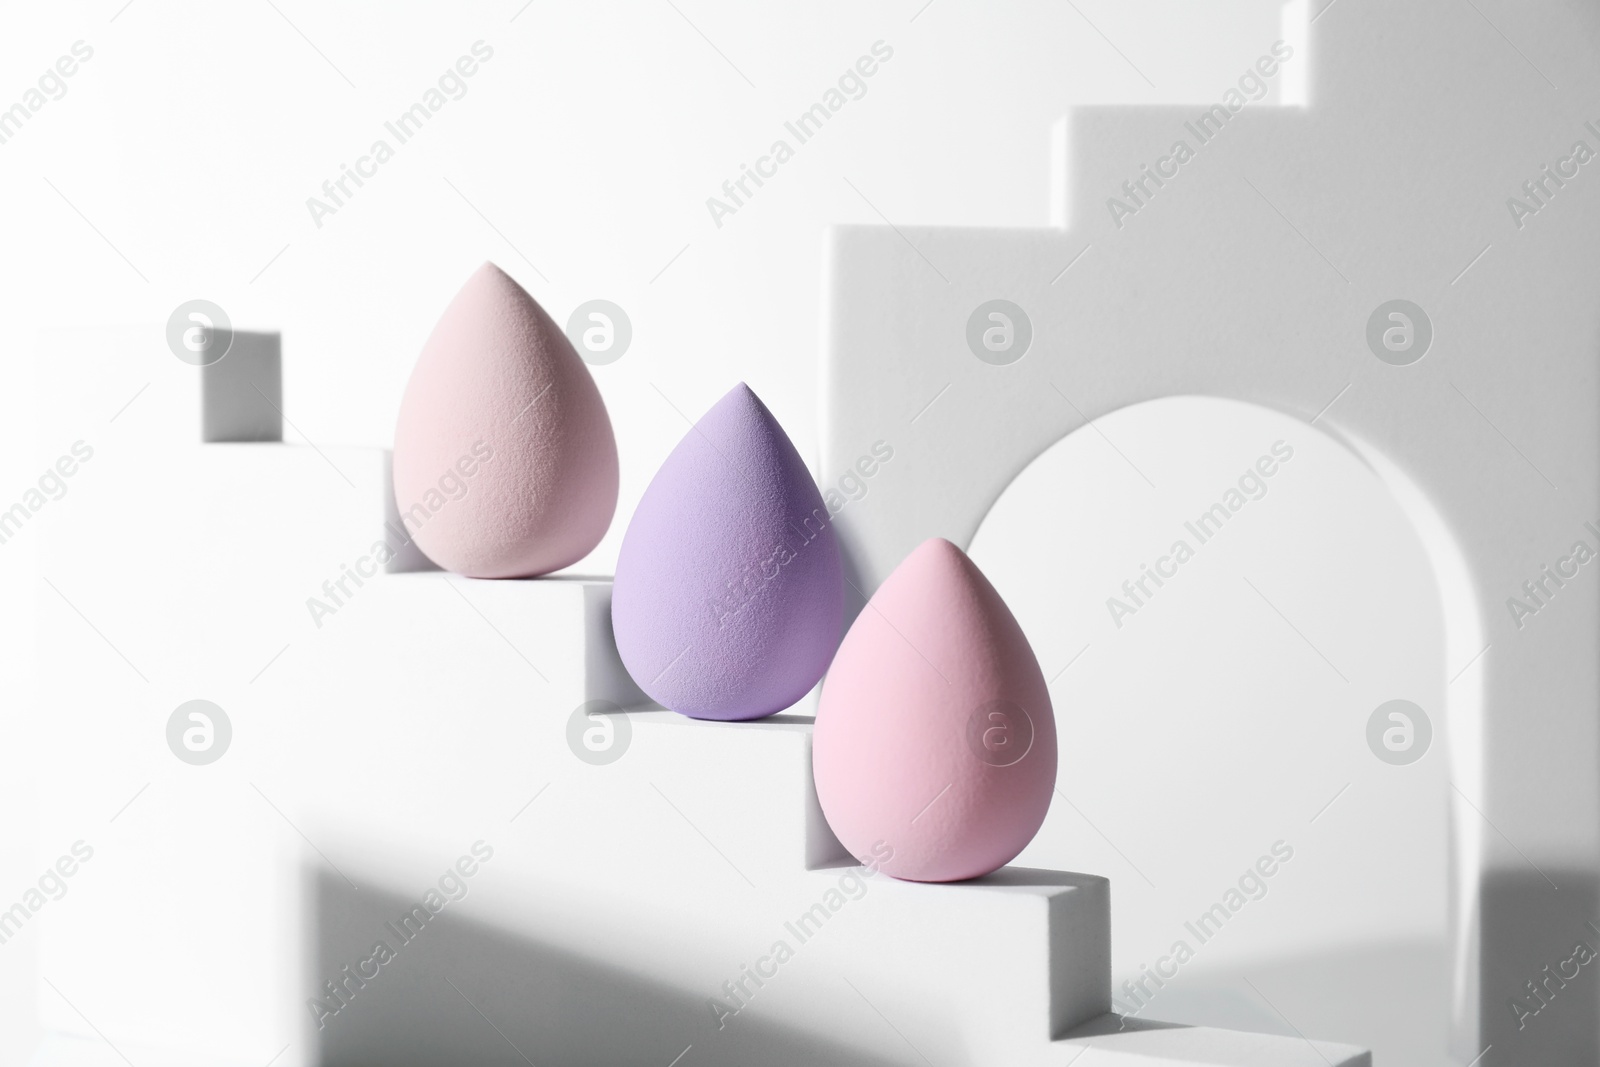 Photo of Stylish presentation of makeup sponges on white background